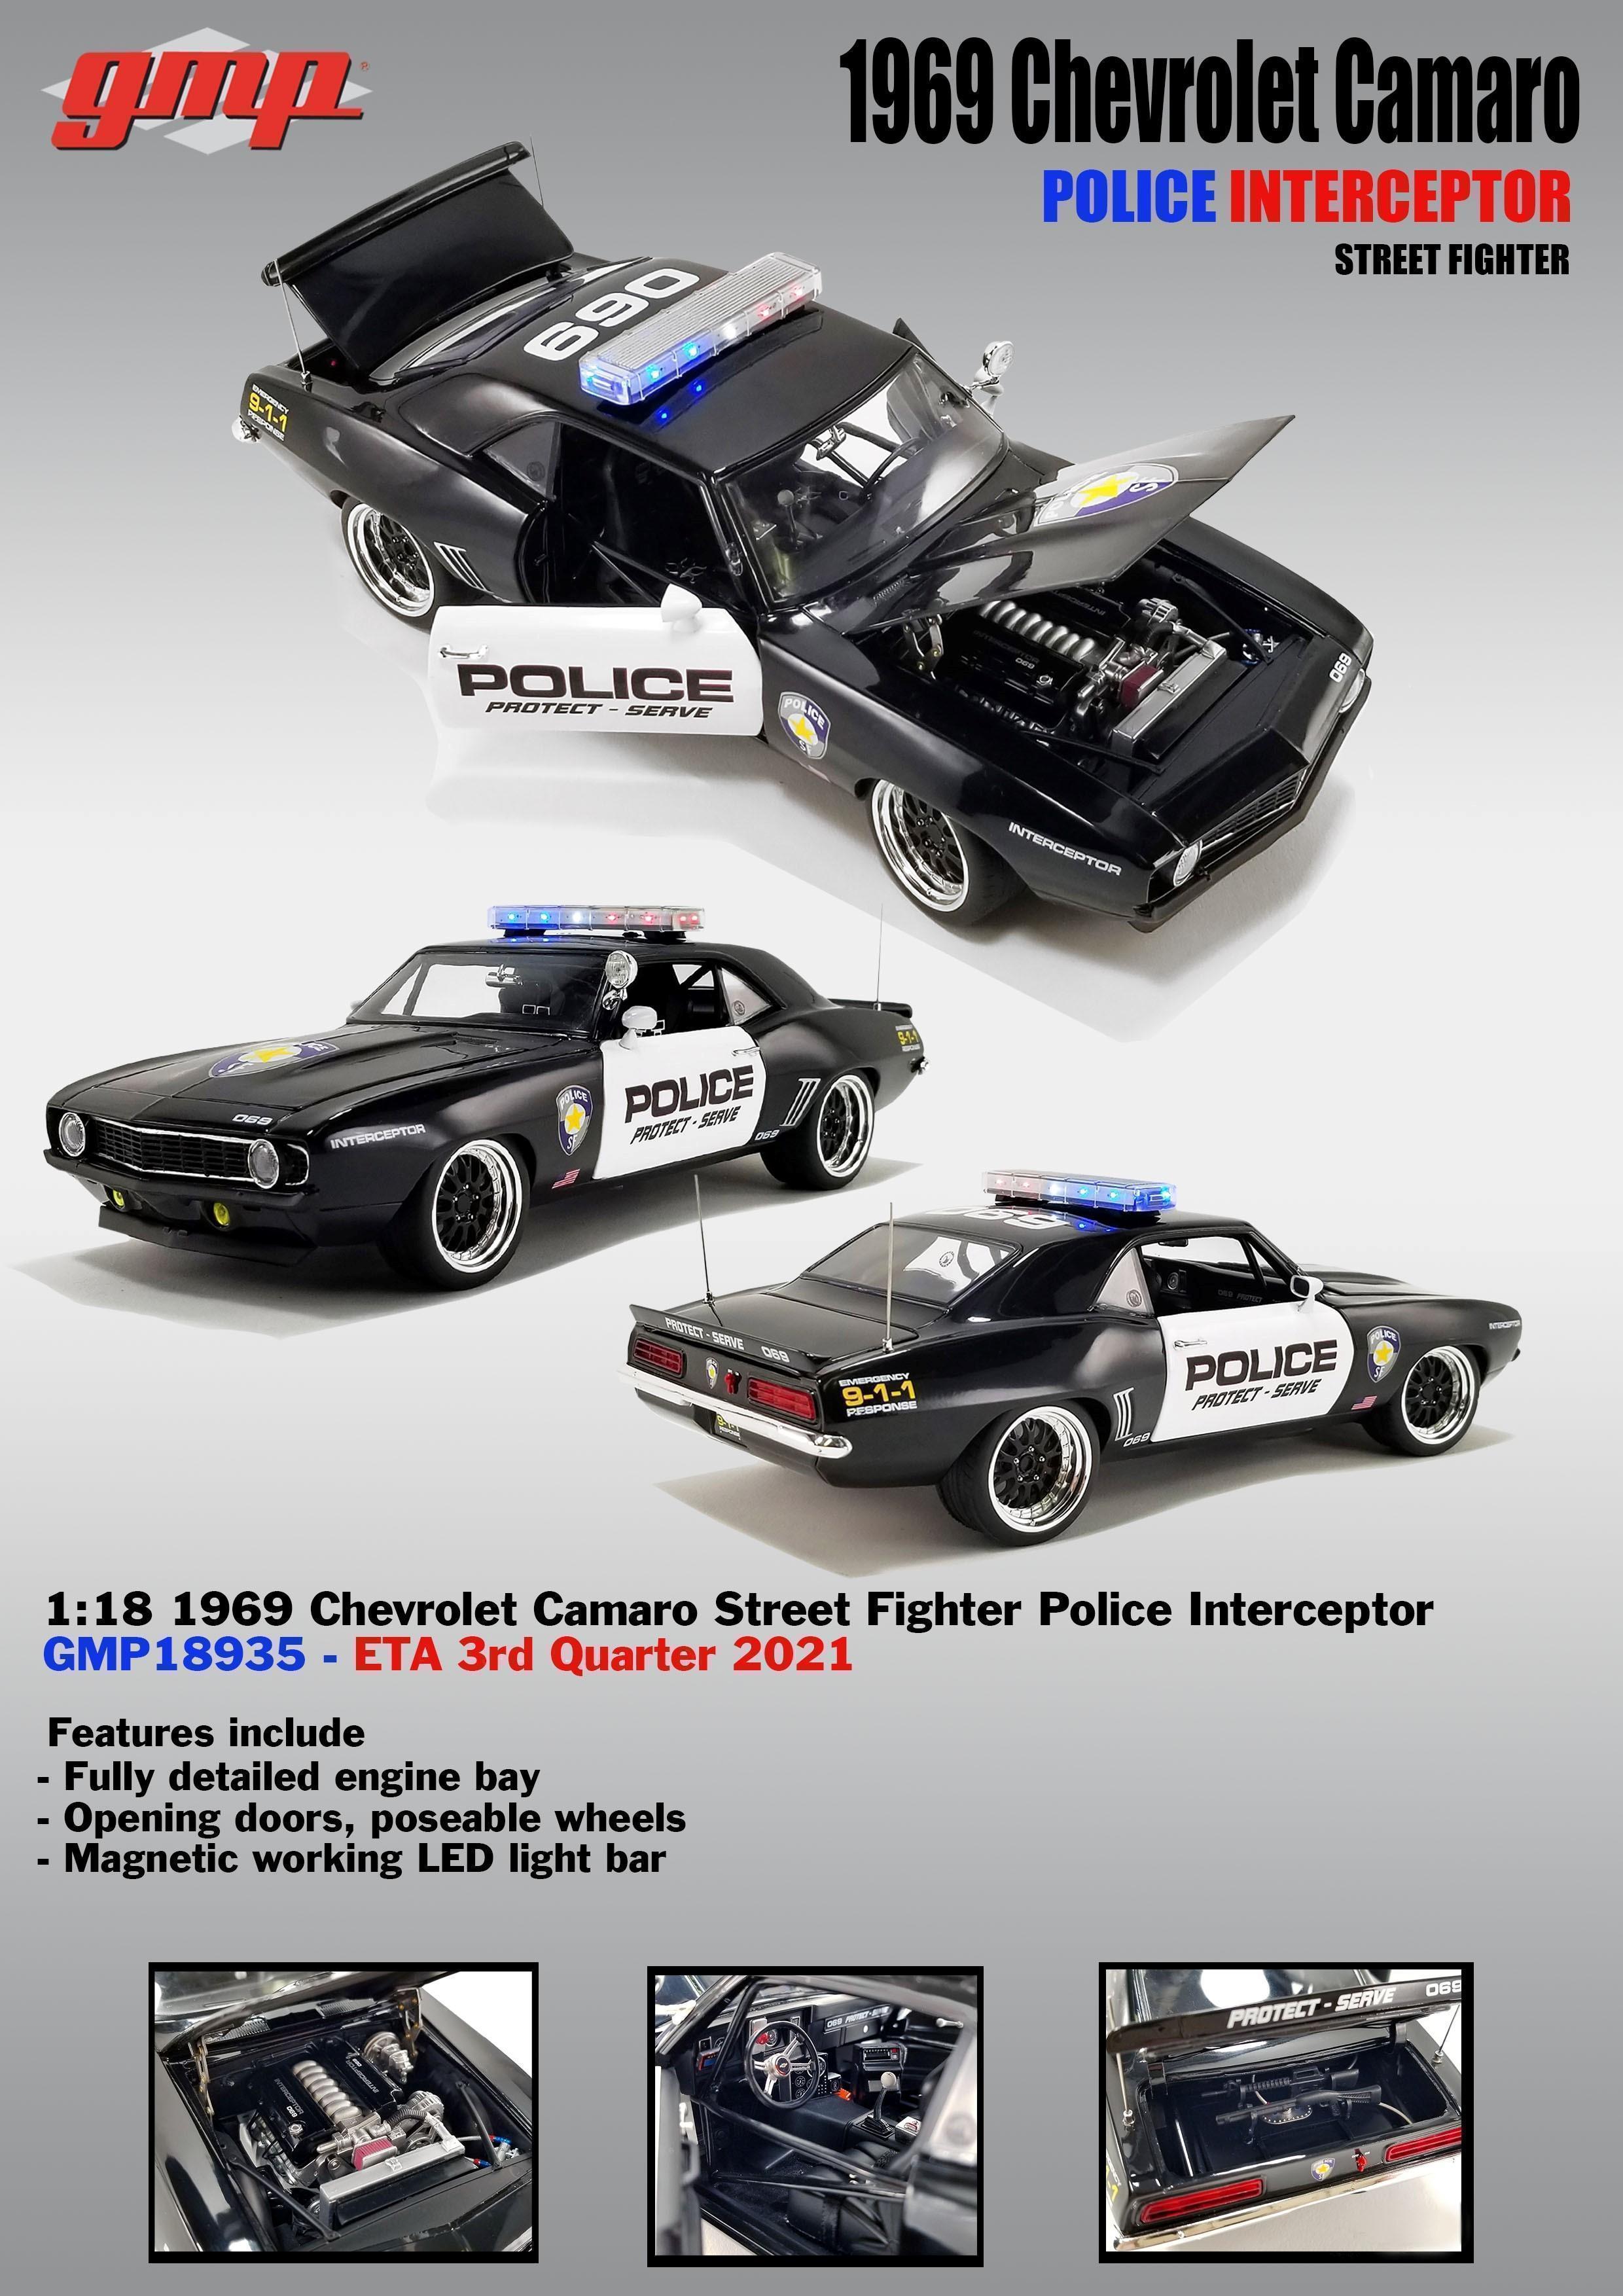 PRE ORDER - 1969 Chevrolet Camaro Street Fighter Police Interceptor 1:18 Scale Model Car (FULL PRICE $259.99)**